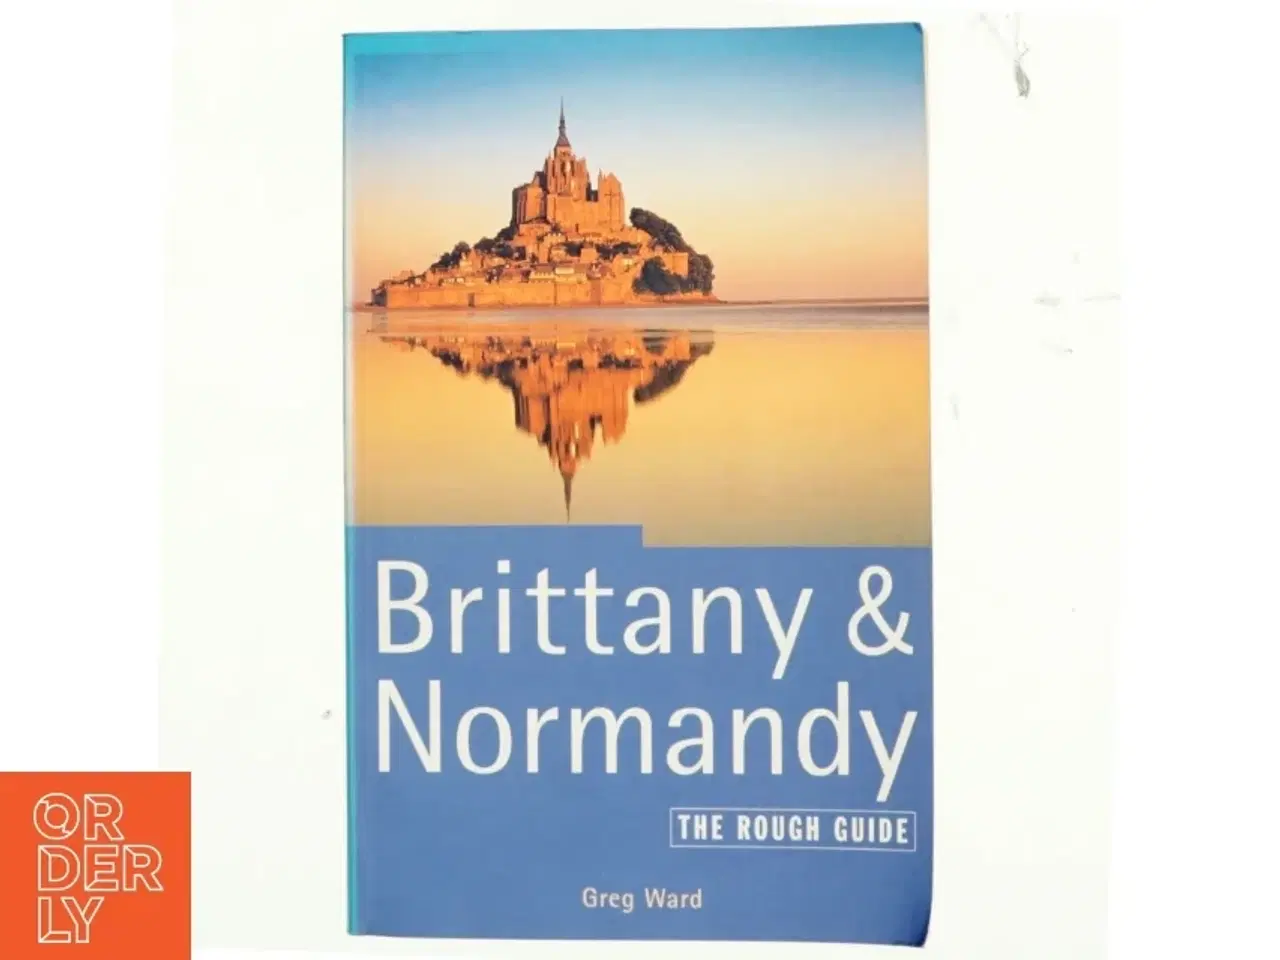 Billede 1 - Brittany & Normandy : the rough guide af Greg Ward (Bog)